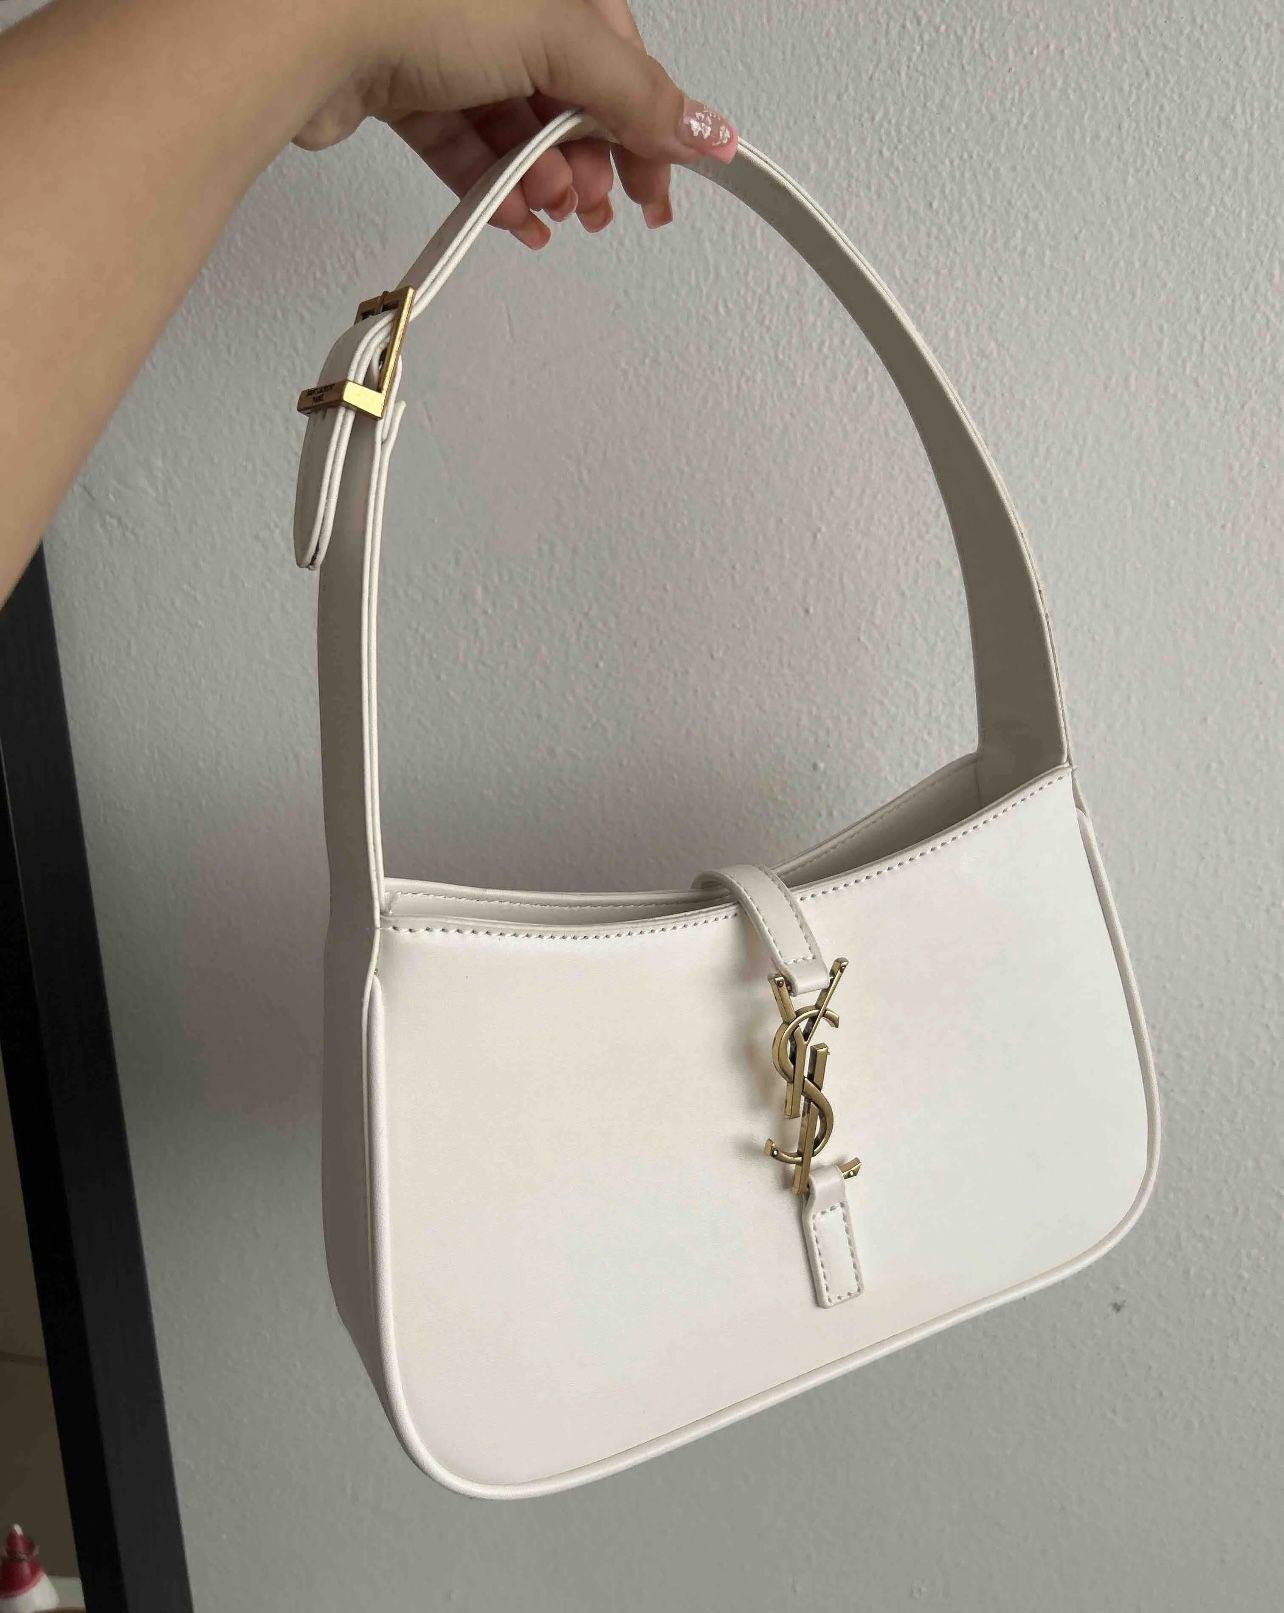 White ysl handbag